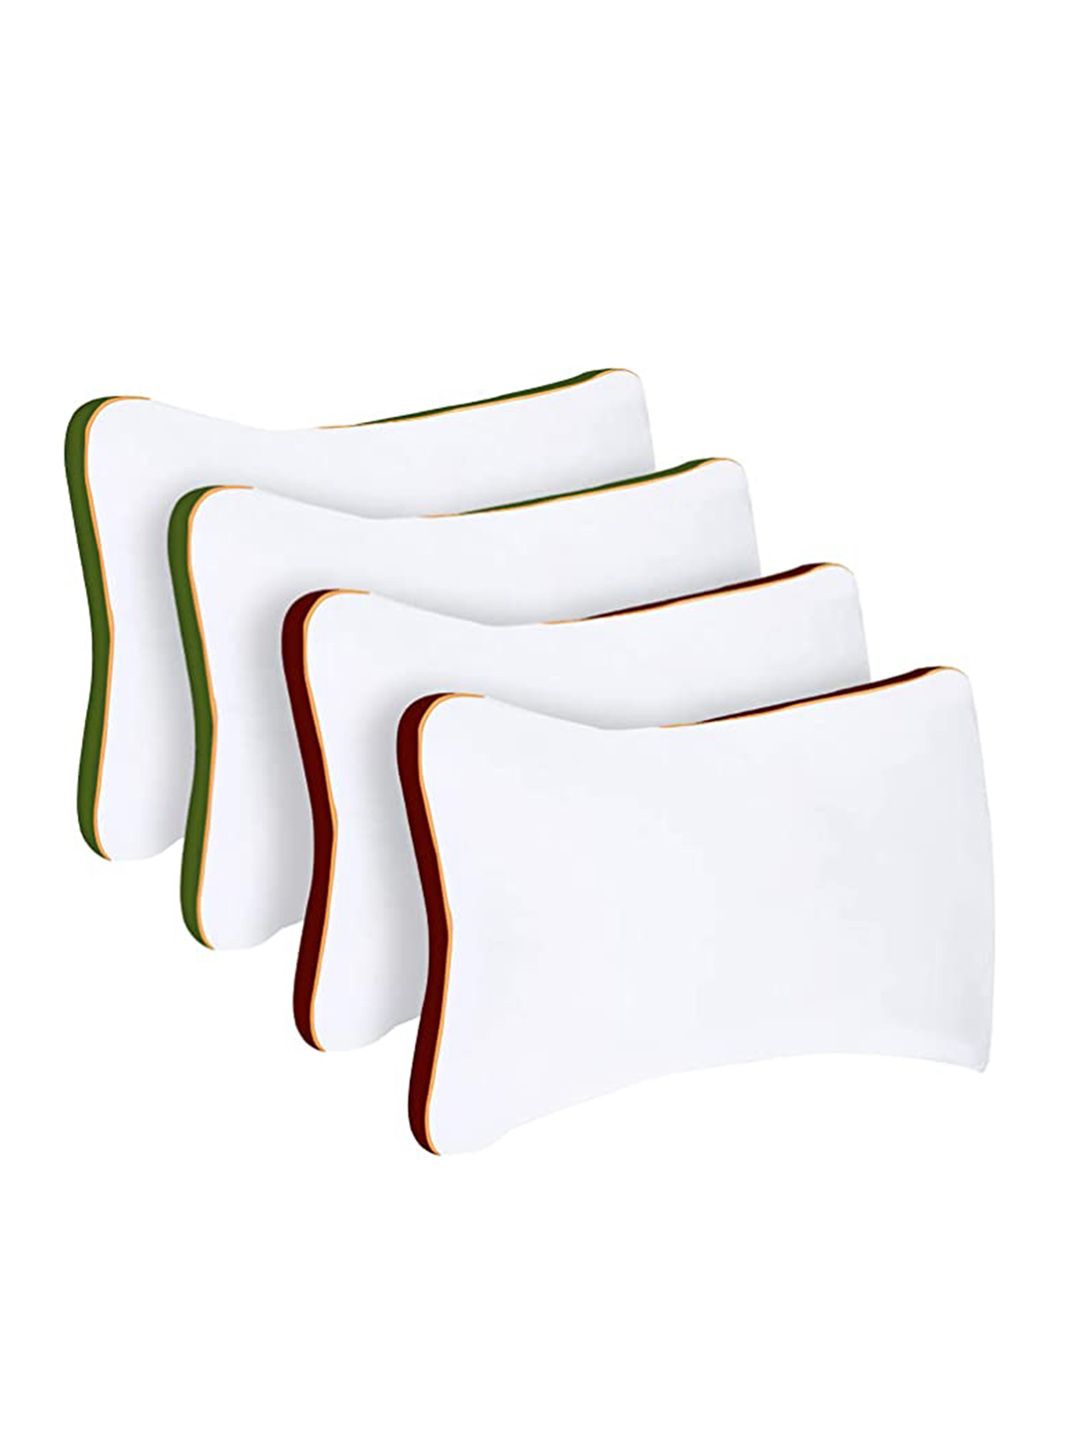 Sleepsia Set Of 4 White Solid Cotton Pillows Price in India